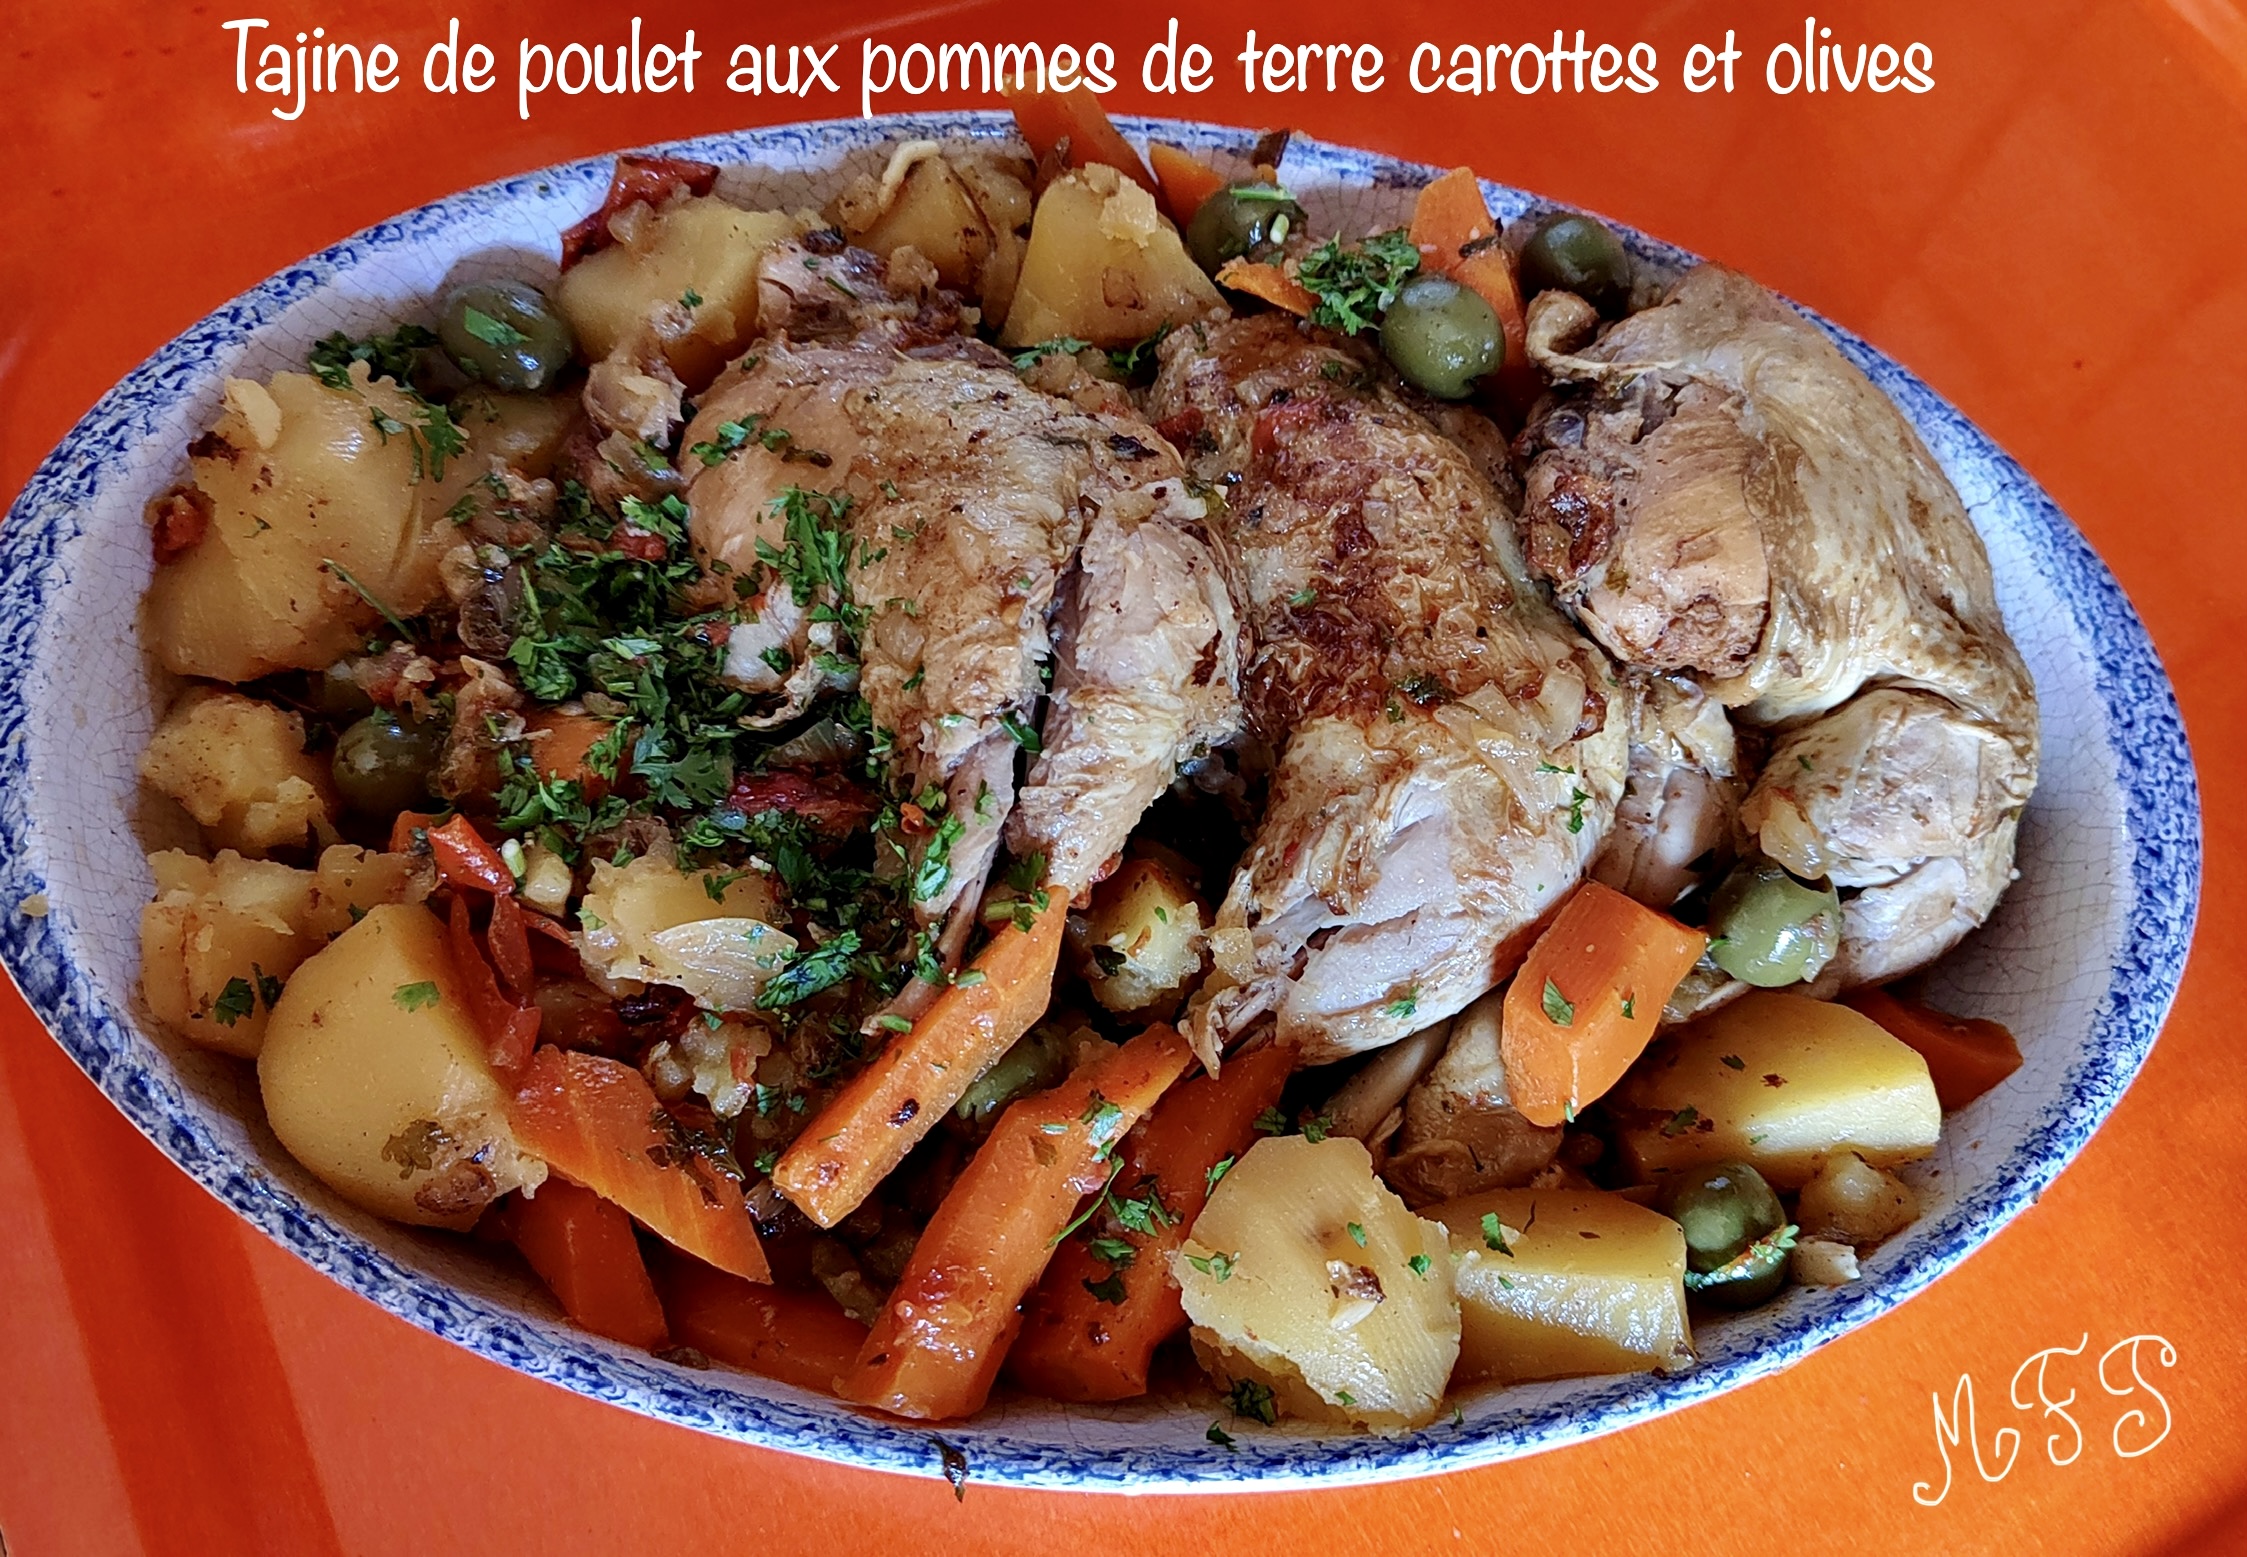 Tajine de poulet aux pommes de terre carottes et olives